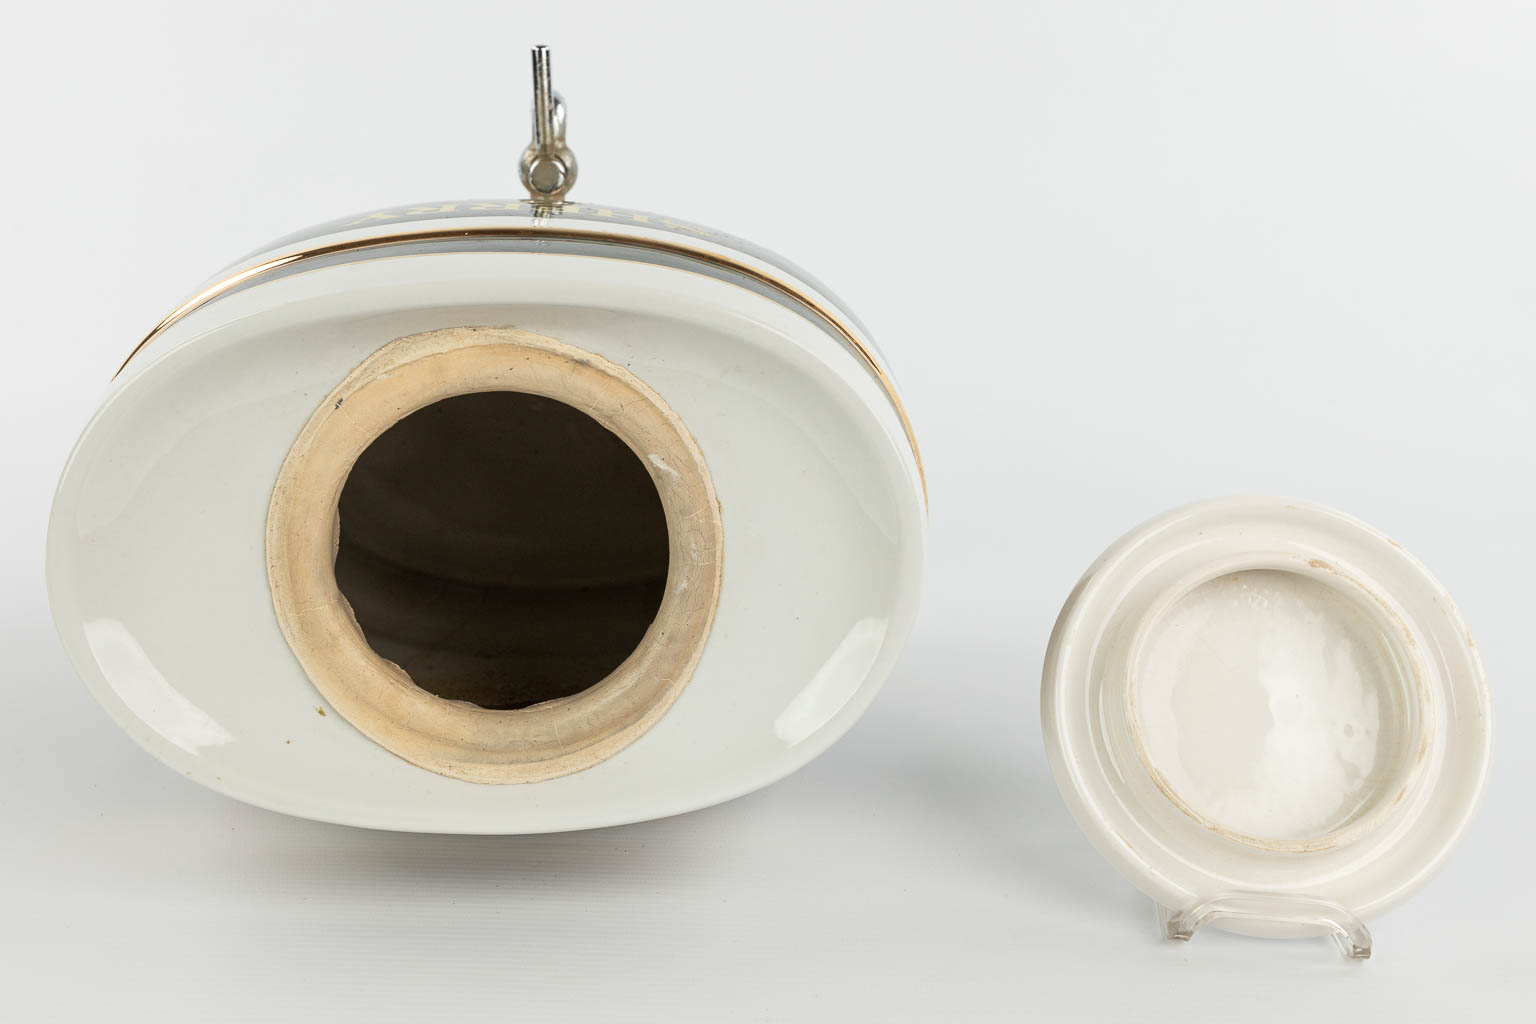 A barrel made of porcelain 